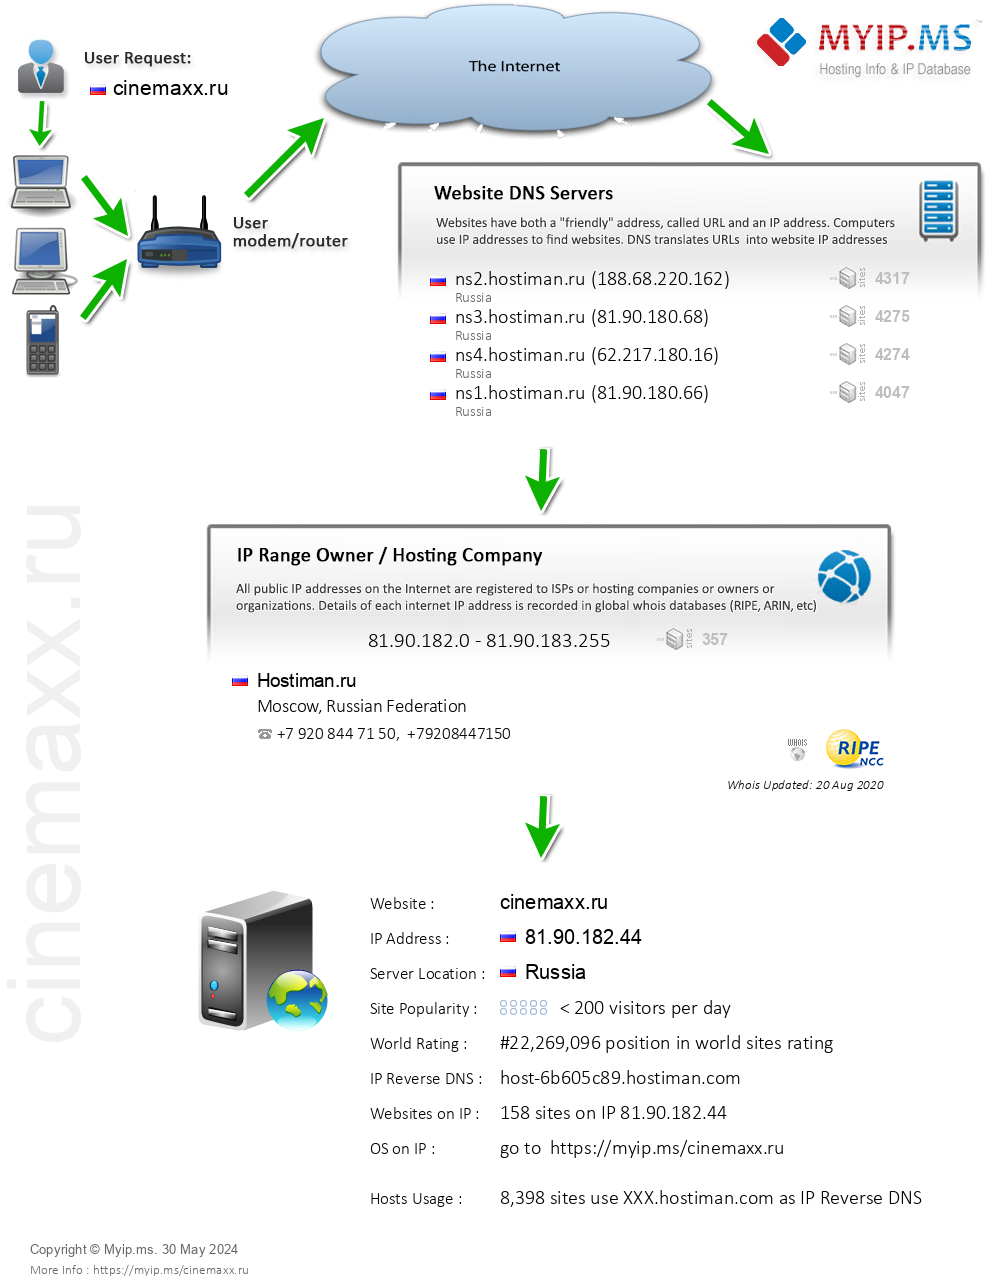 Cinemaxx.ru - Website Hosting Visual IP Diagram